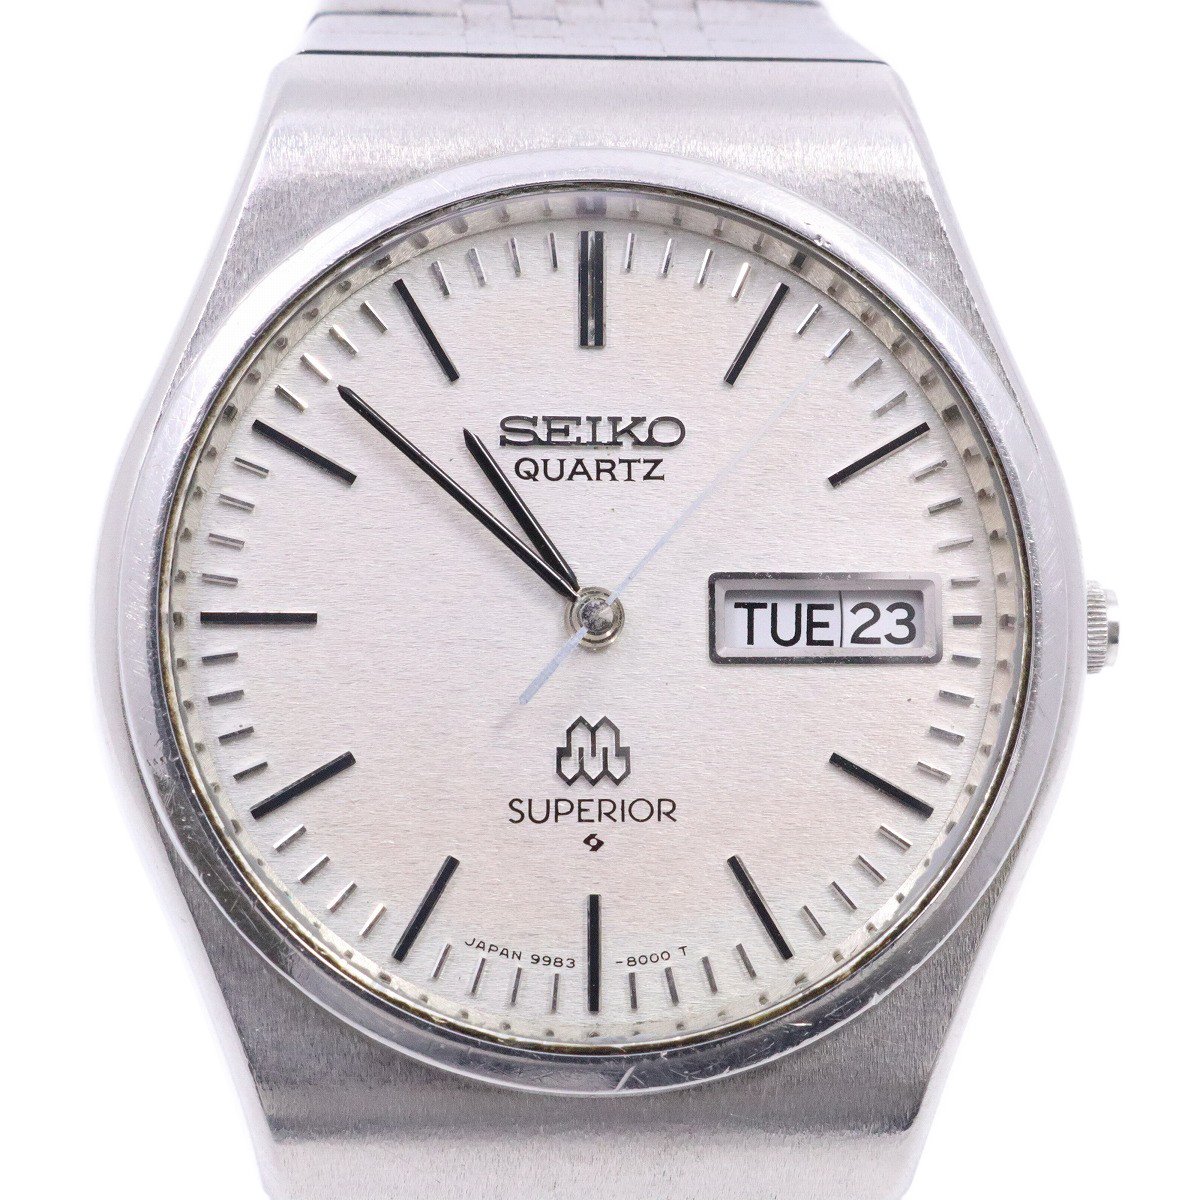 【中古】SEIKO セイコー スーペリア ツインクォーツ 1978年製 メンズ 腕時計 デイデイト シルバー文字盤 純正SSベルト 9983-8000【いおき質店】